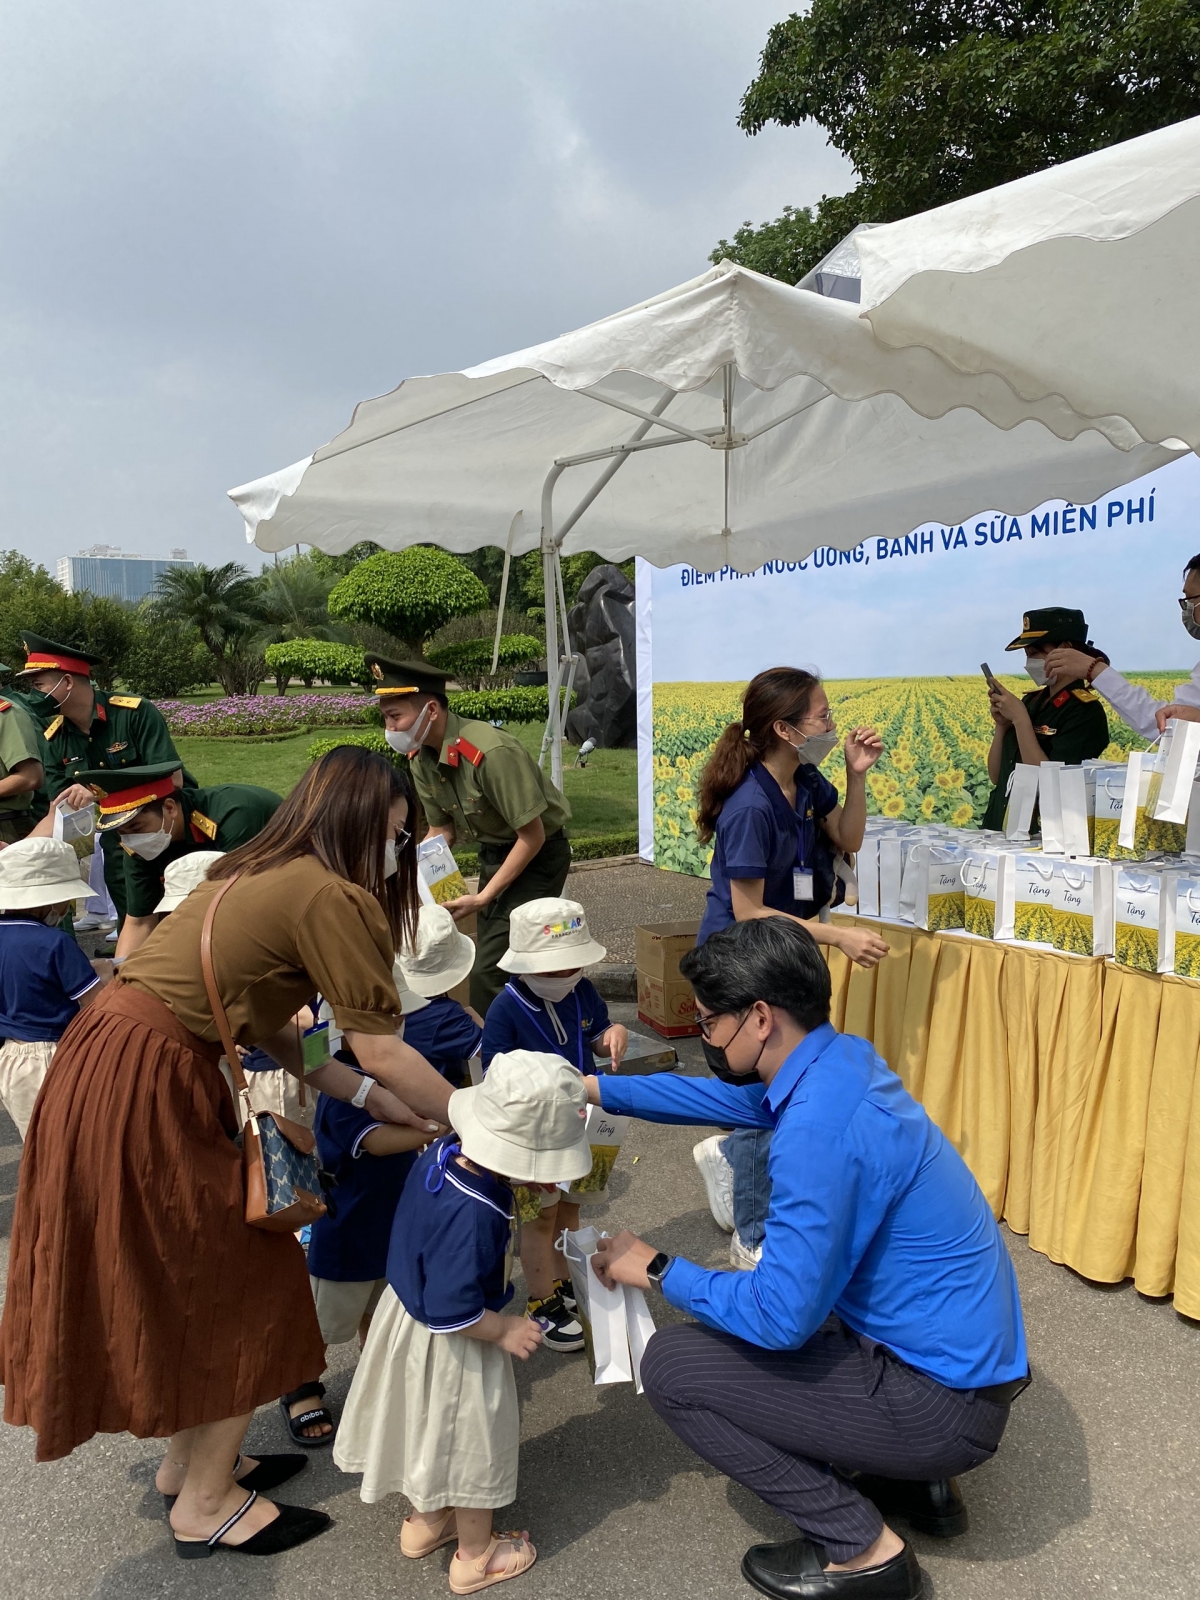 Phục vụ nước uống, bánh, sữa là hoạt động được tổ chức thường xuyên vào các dịp kỷ niệm đặc biệt tại Lăng Chủ tịch Hồ Chí Minh.